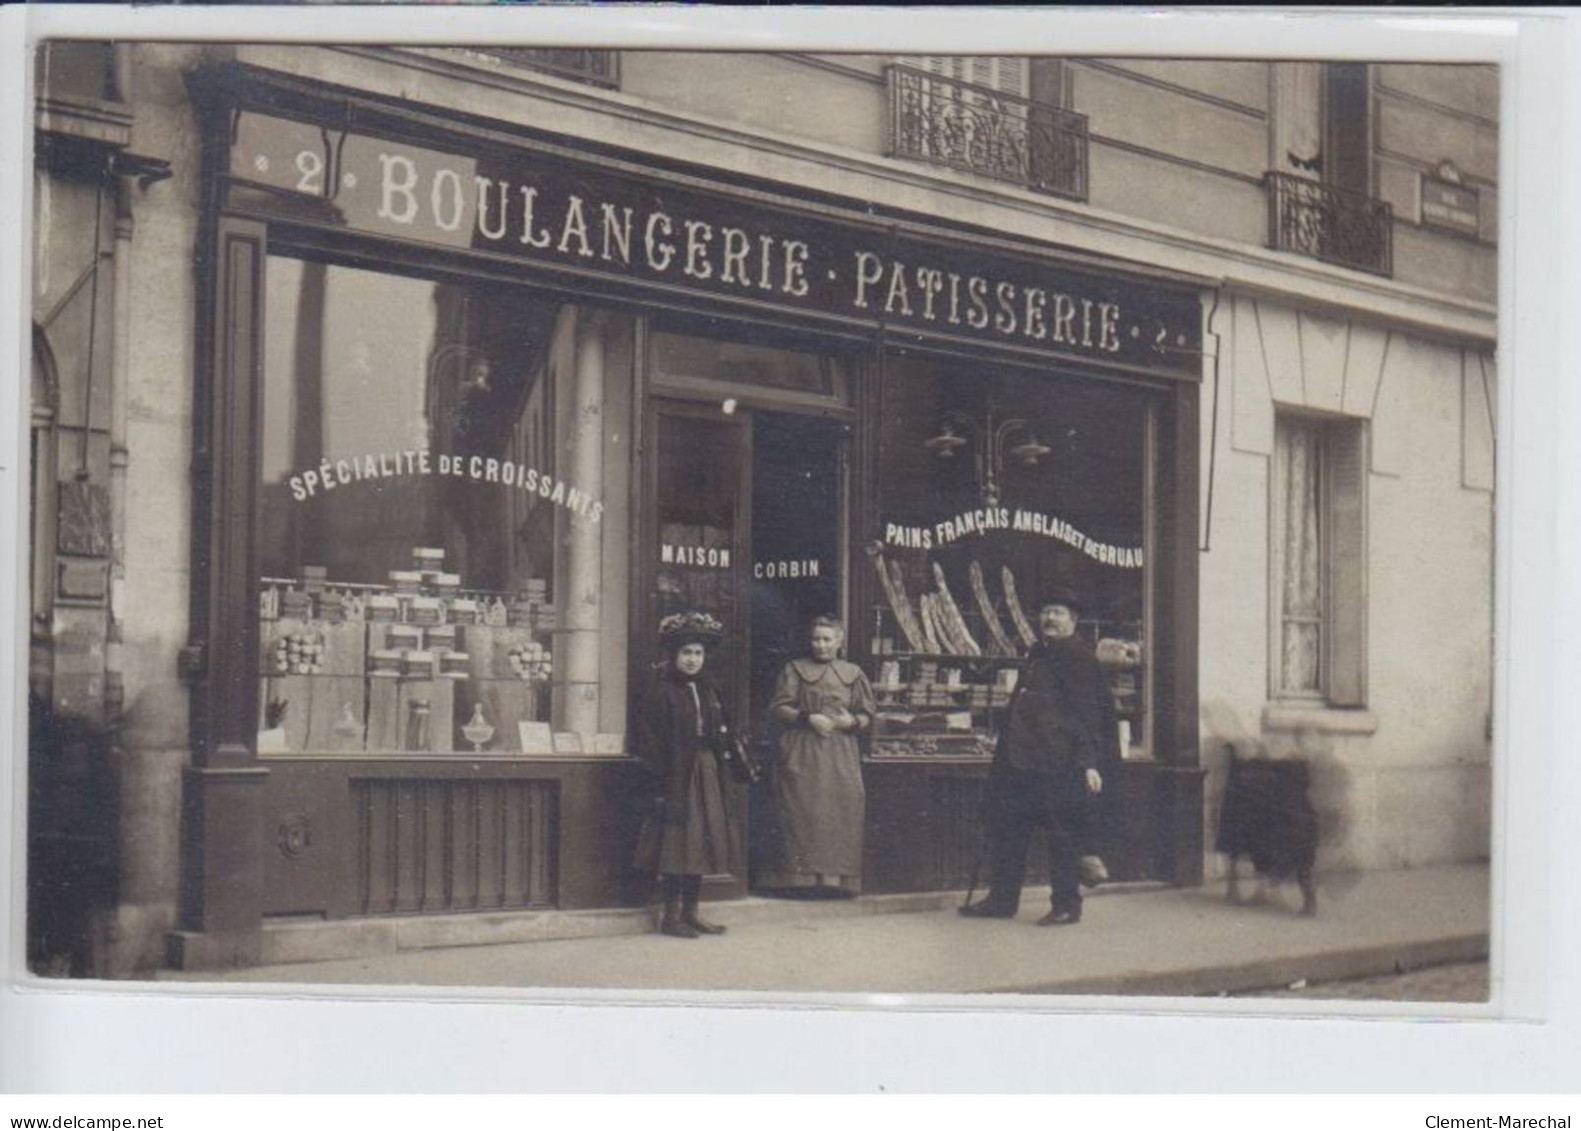 FRANCE: Boulangerie Patisserie, Spécialité De Croissants, Maison Corbin, Pains Français Anglais De Gruau - Très Bon état - Fotos